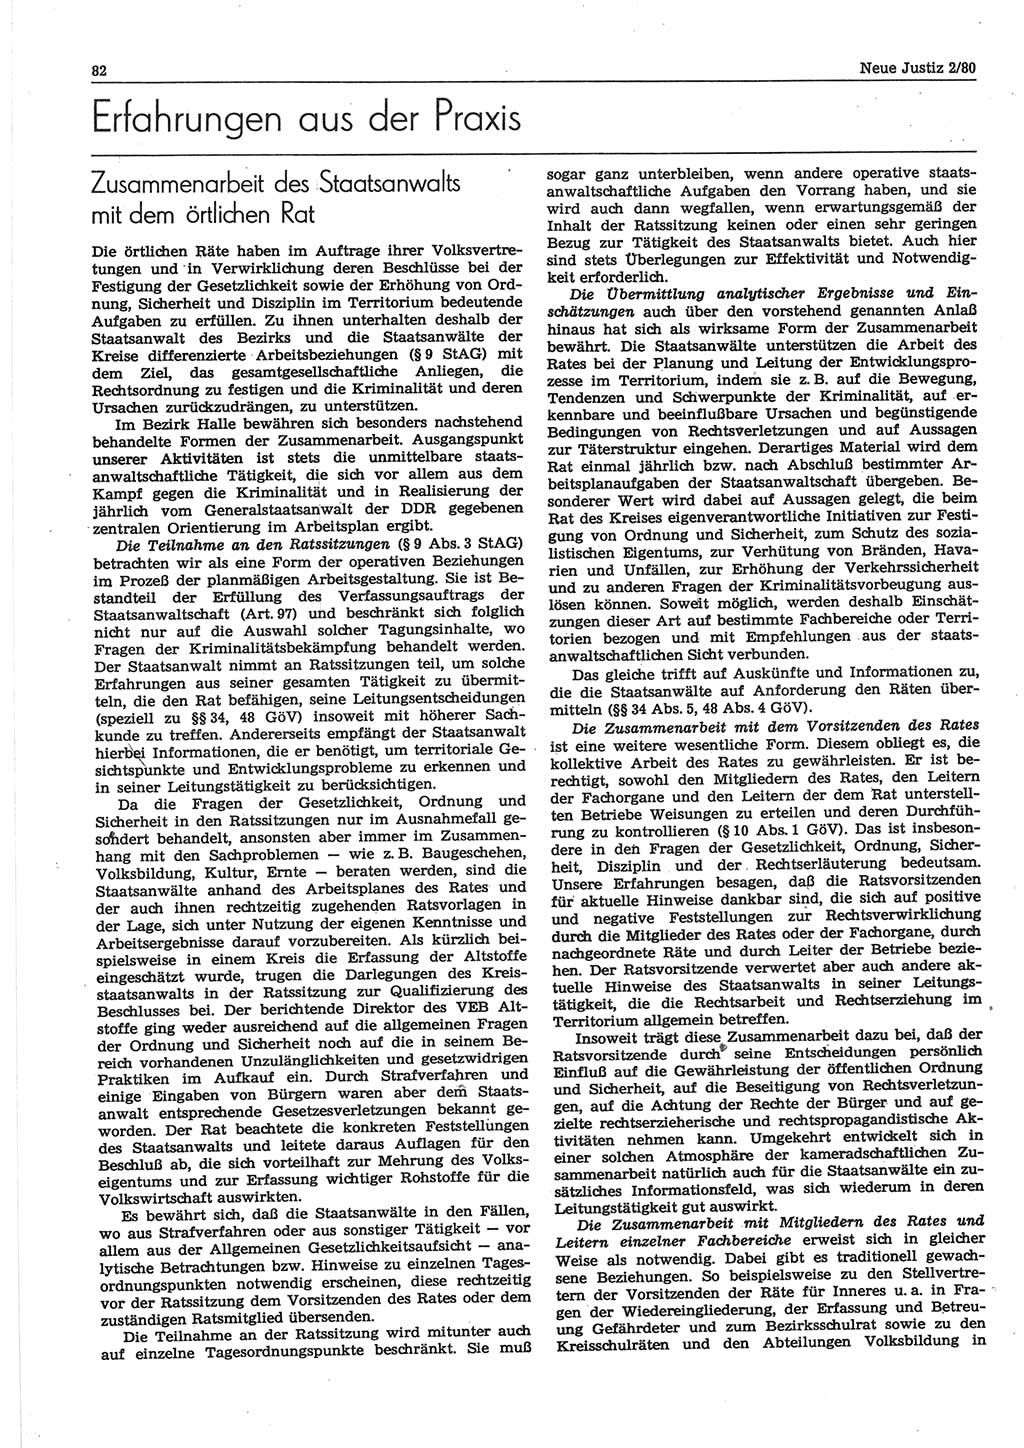 Neue Justiz (NJ), Zeitschrift für sozialistisches Recht und Gesetzlichkeit [Deutsche Demokratische Republik (DDR)], 34. Jahrgang 1980, Seite 82 (NJ DDR 1980, S. 82)